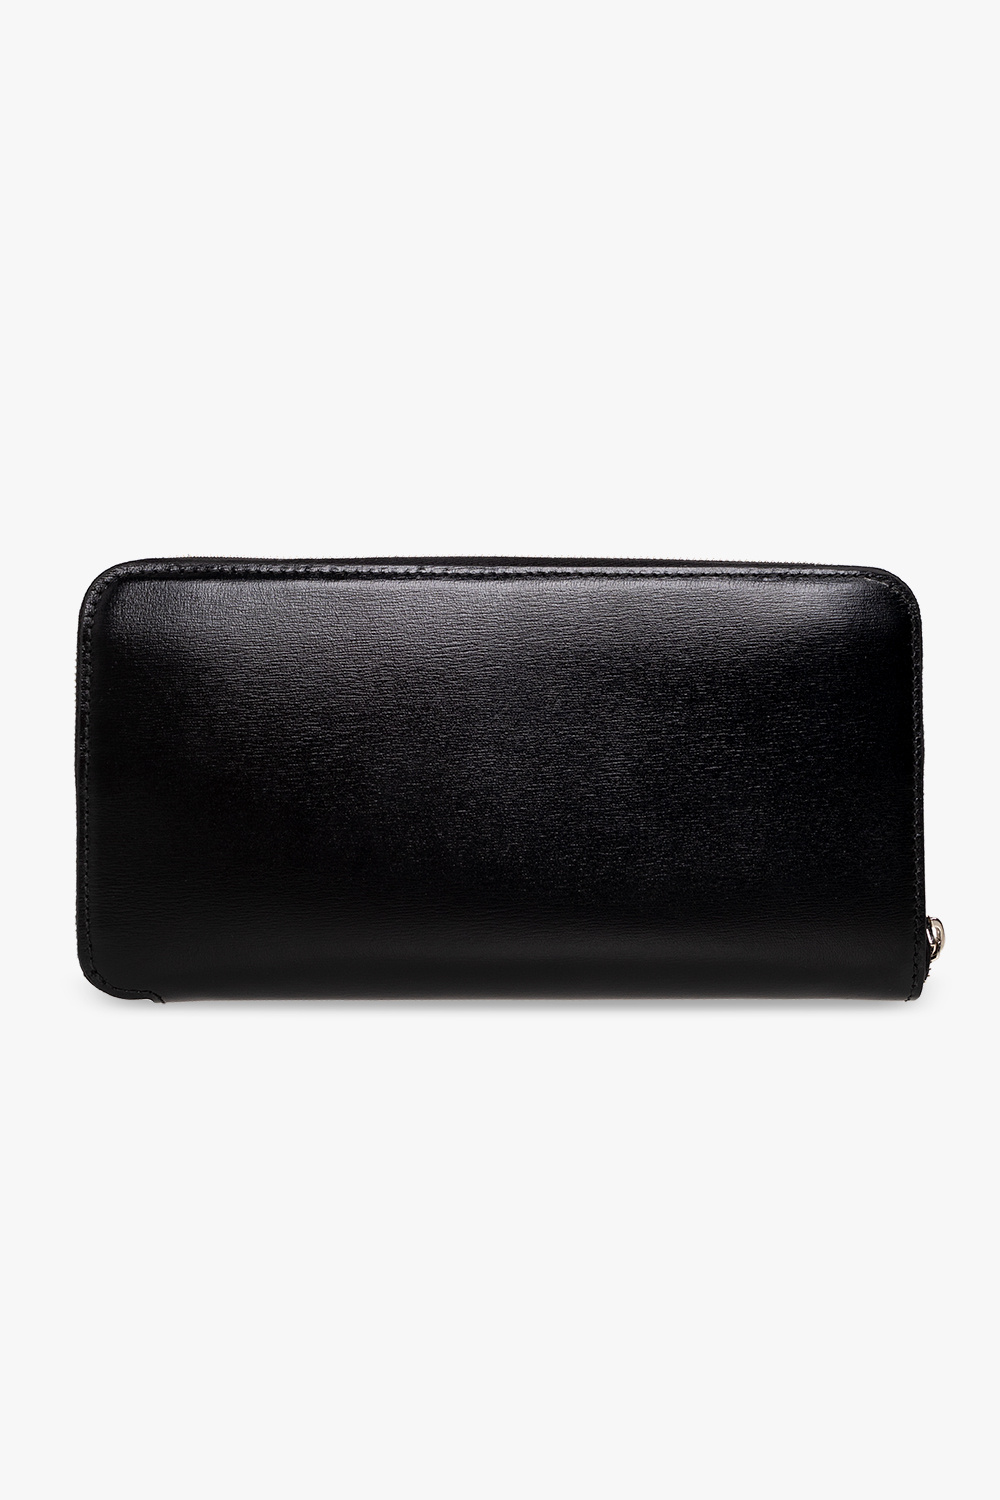 Alaïa Leather wallet